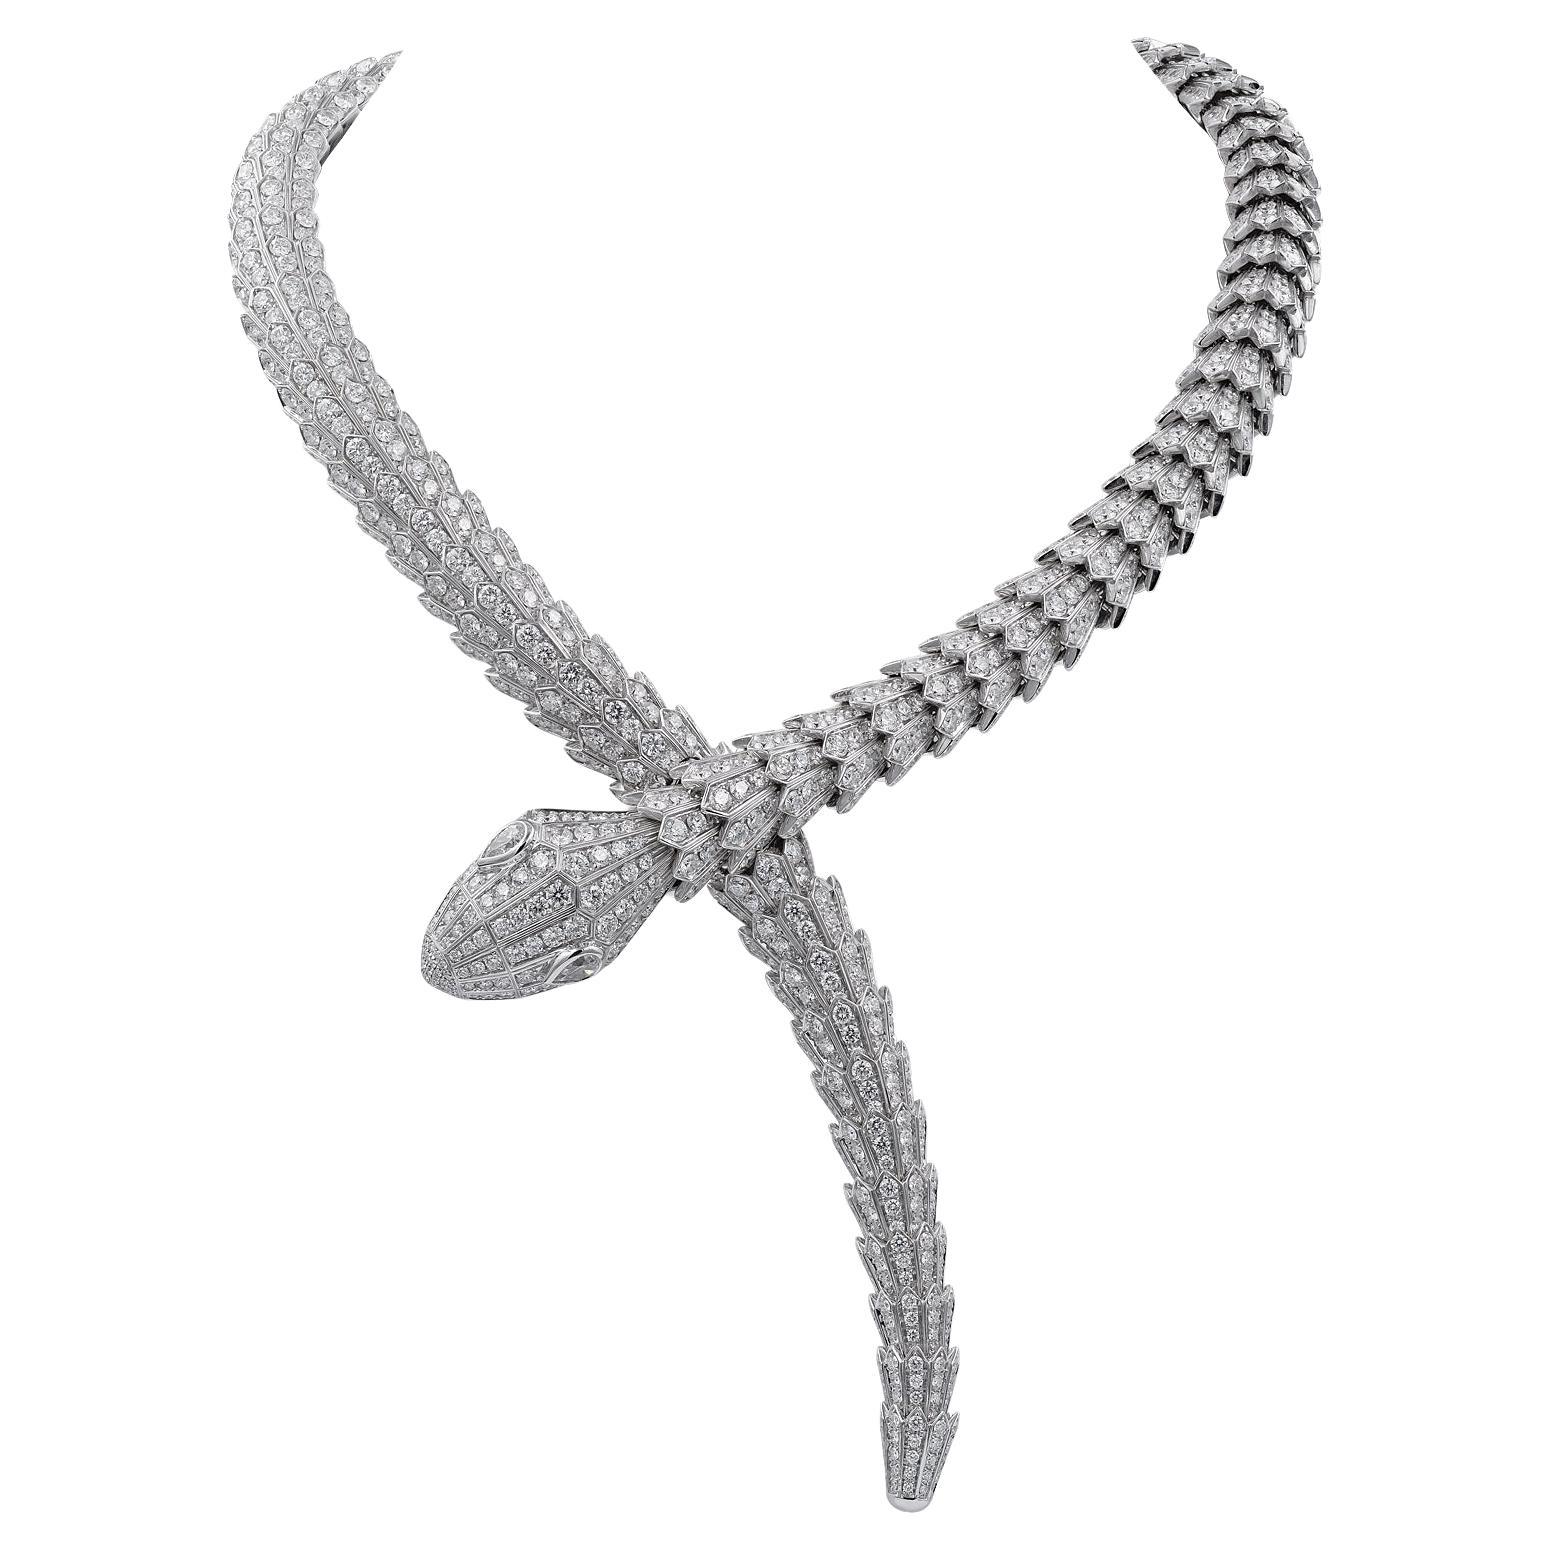 Bulgari Diamond Serpenti Necklace in 18kt White Gold